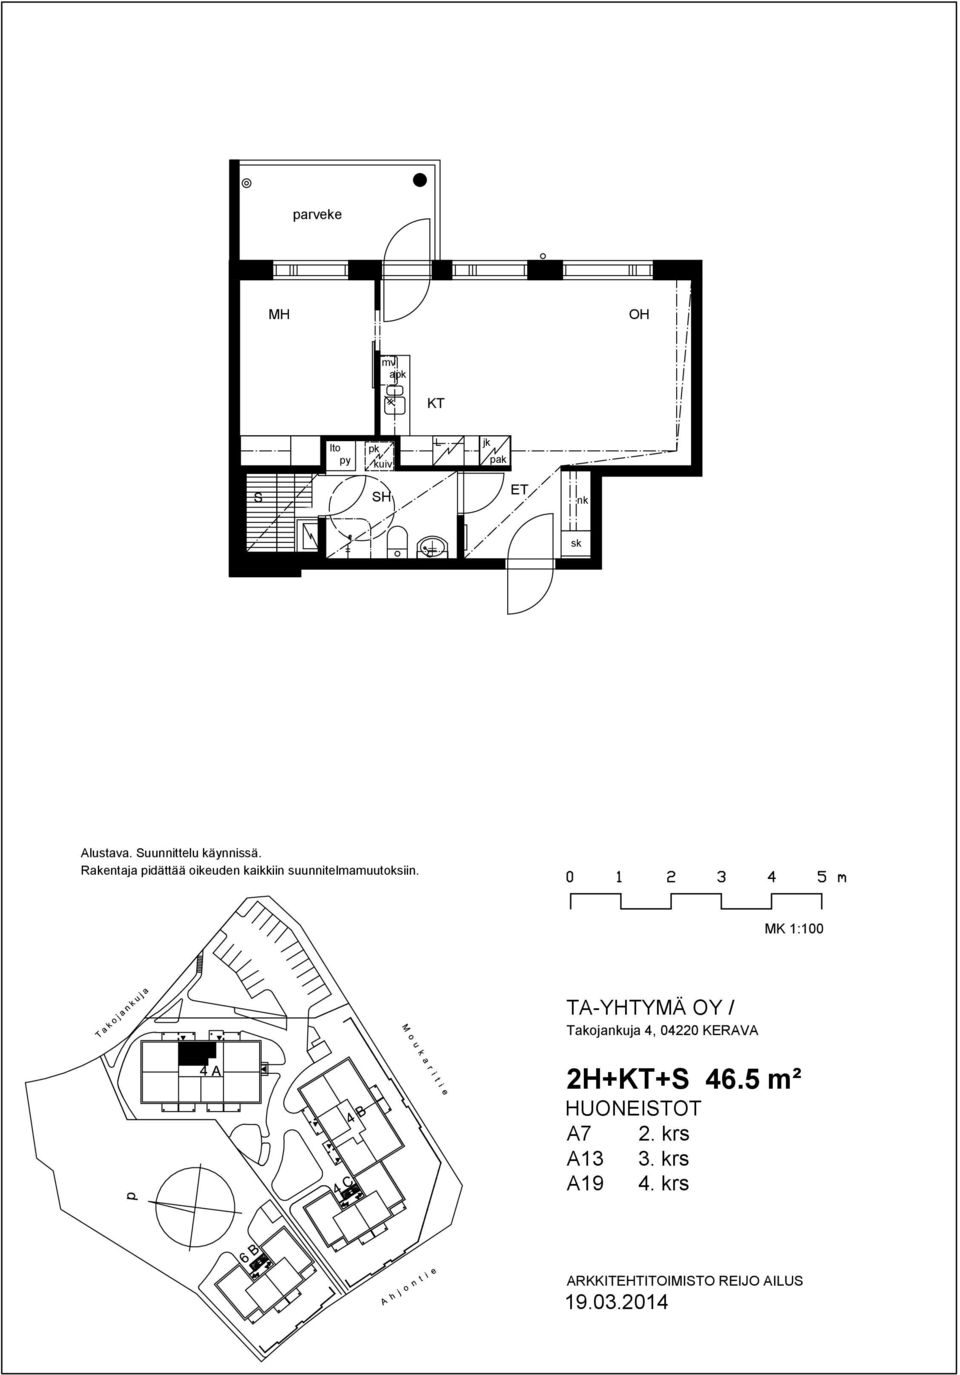 5 m² HUONEITOT A7 2.